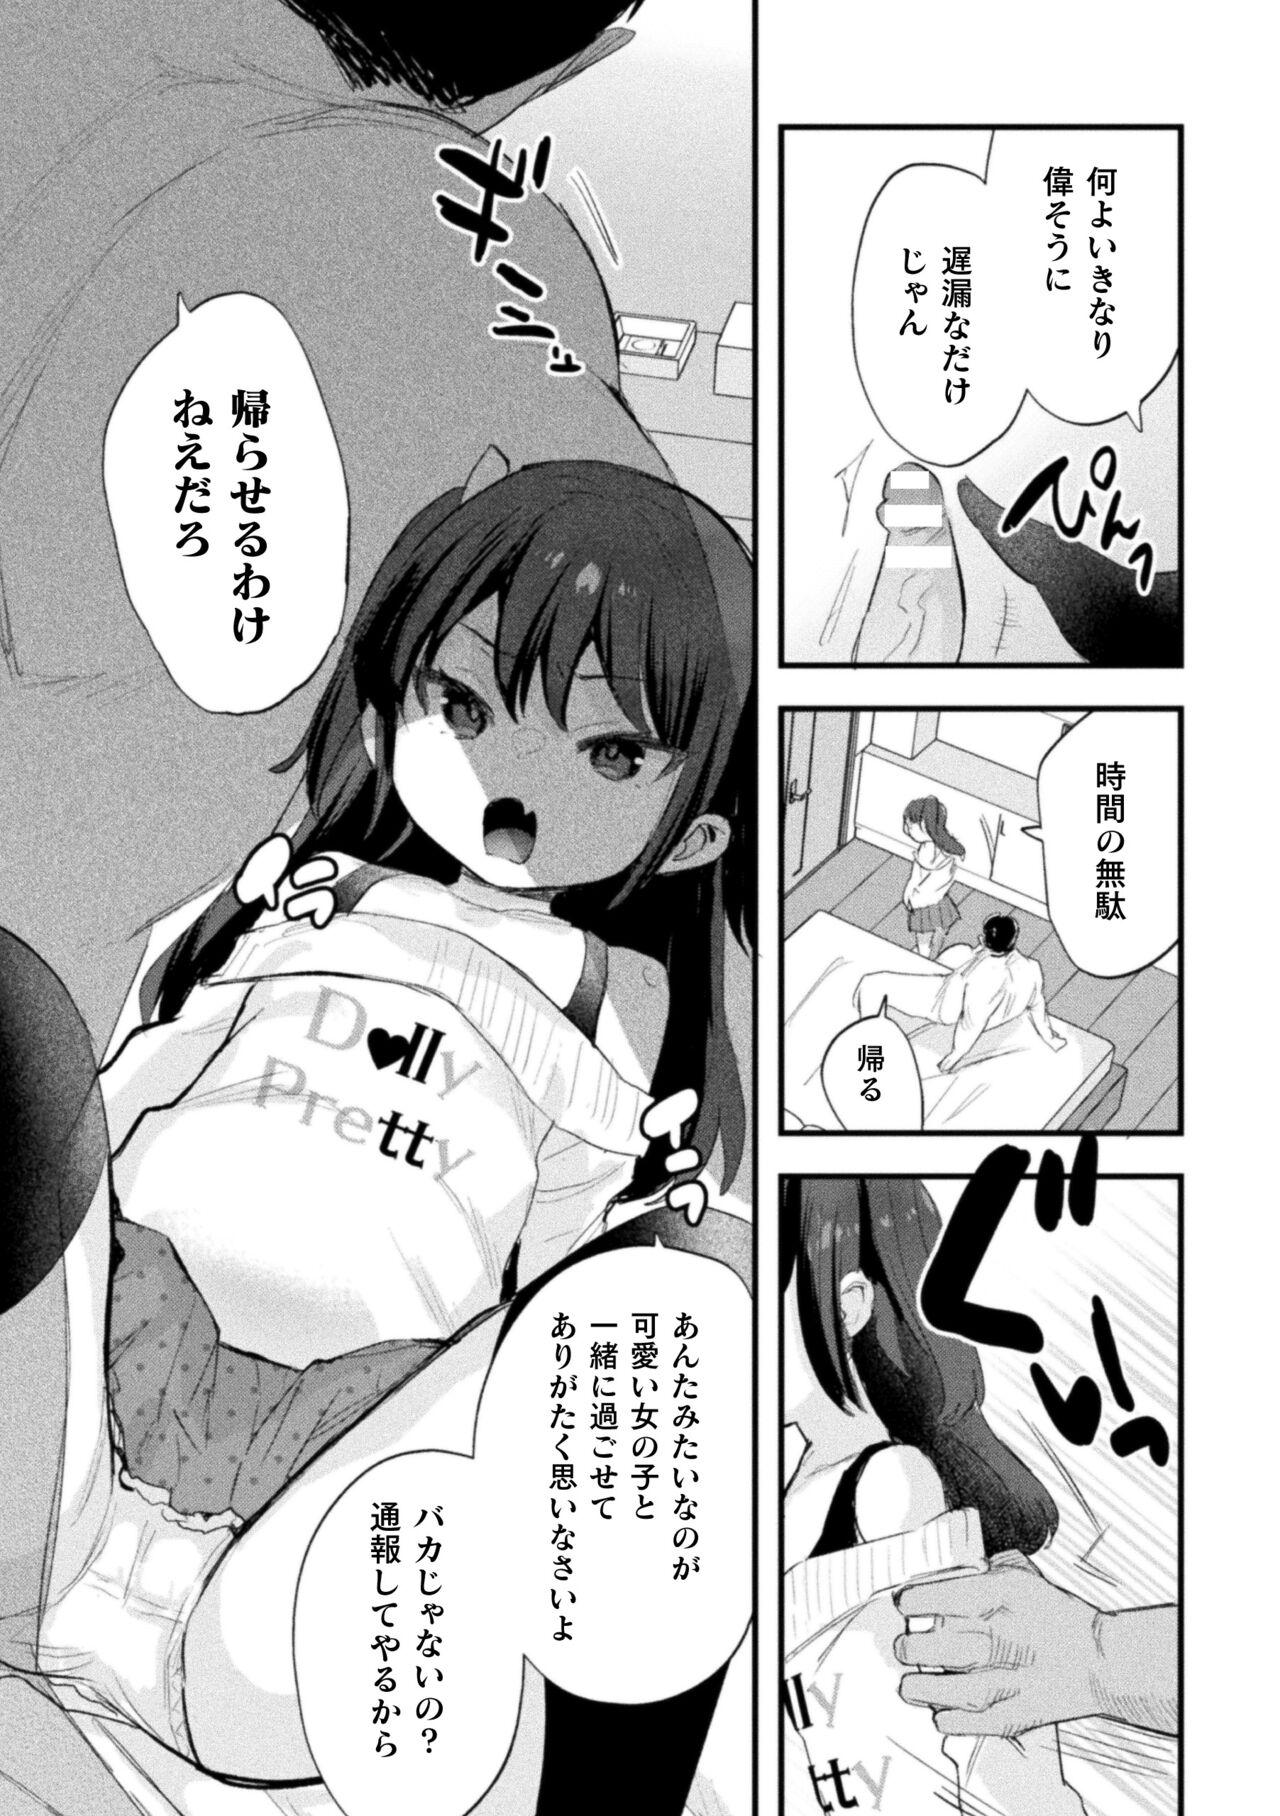 Horny Slut Nijigen komikku magajin mesugakipapa katsu seisai o teate wa niku bō ikkatsu wakara se harai Vol. 1 Cam - Page 9